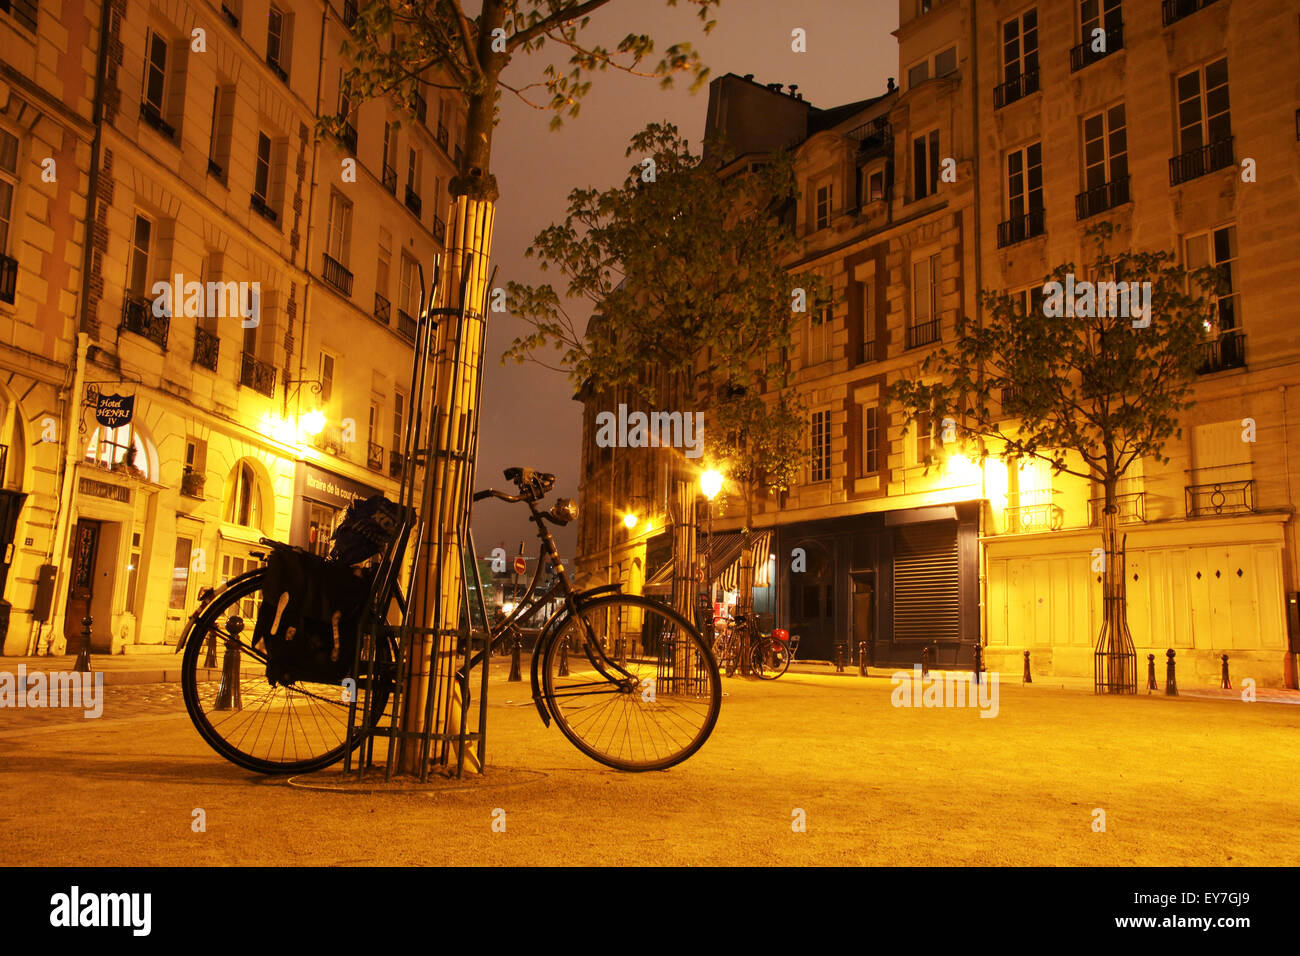 Bike in Paris latin quarter, Vélo dans le quartier latin de Paris Stock Photo